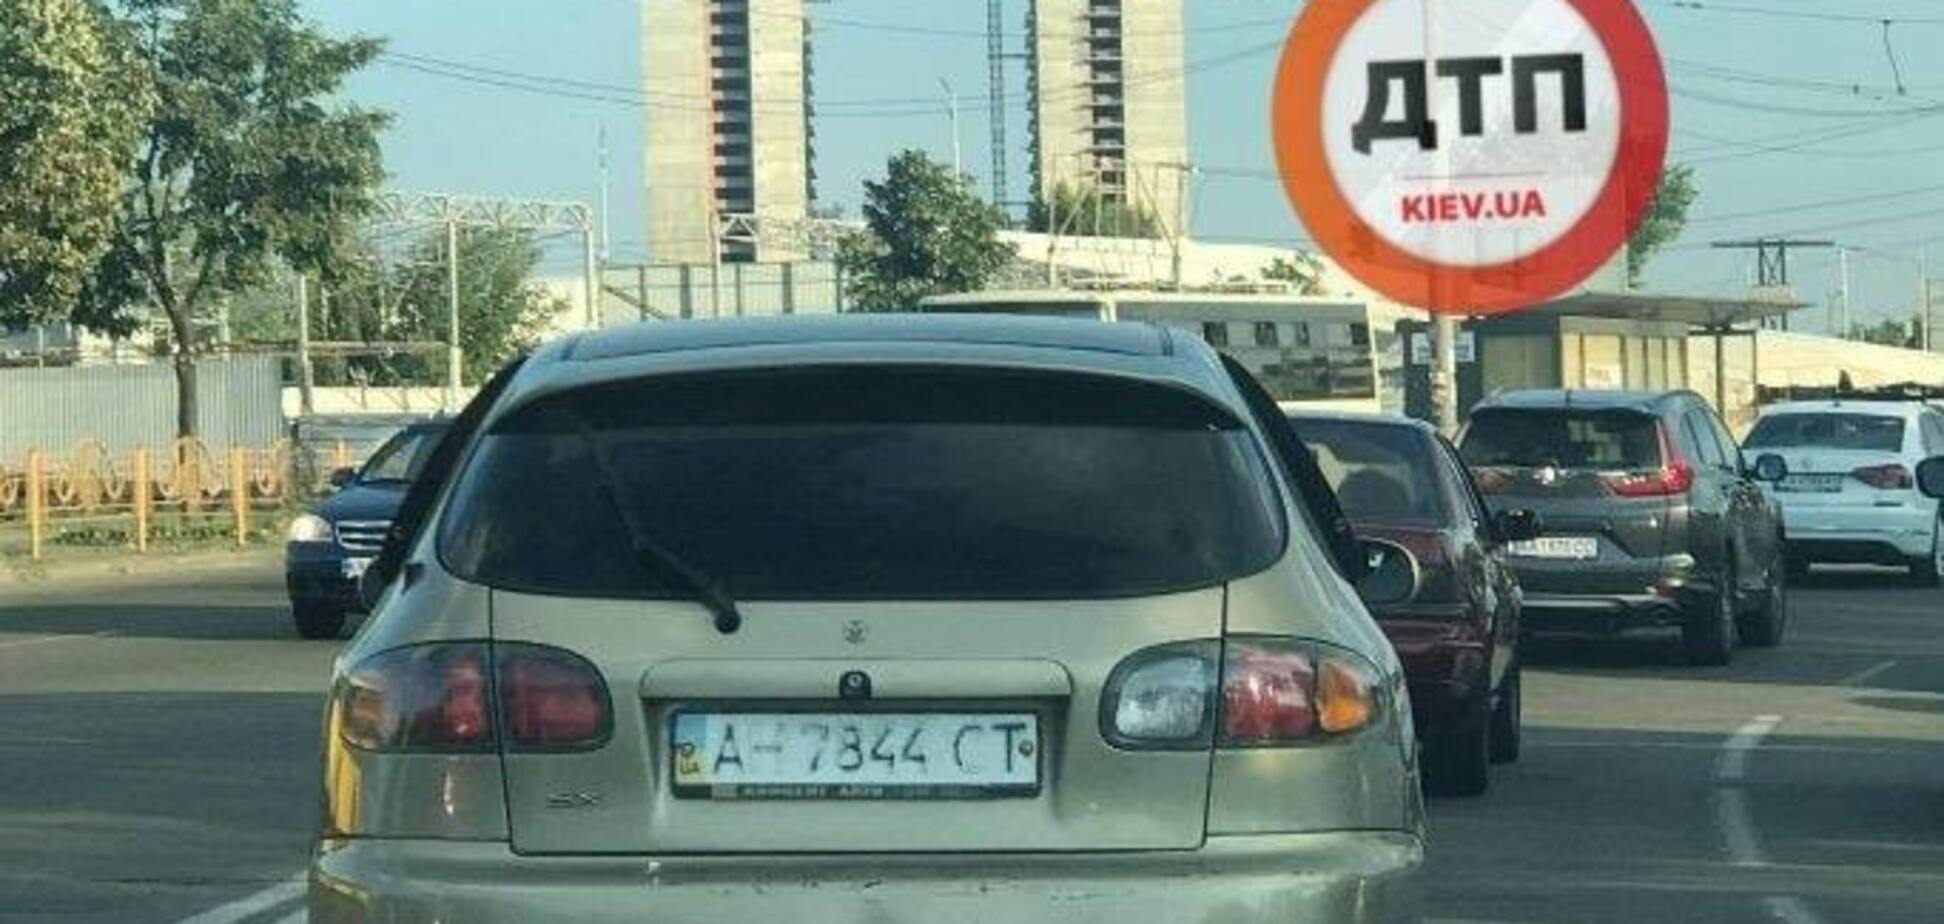 Украинские водители стали активно замазывать номера своих авто